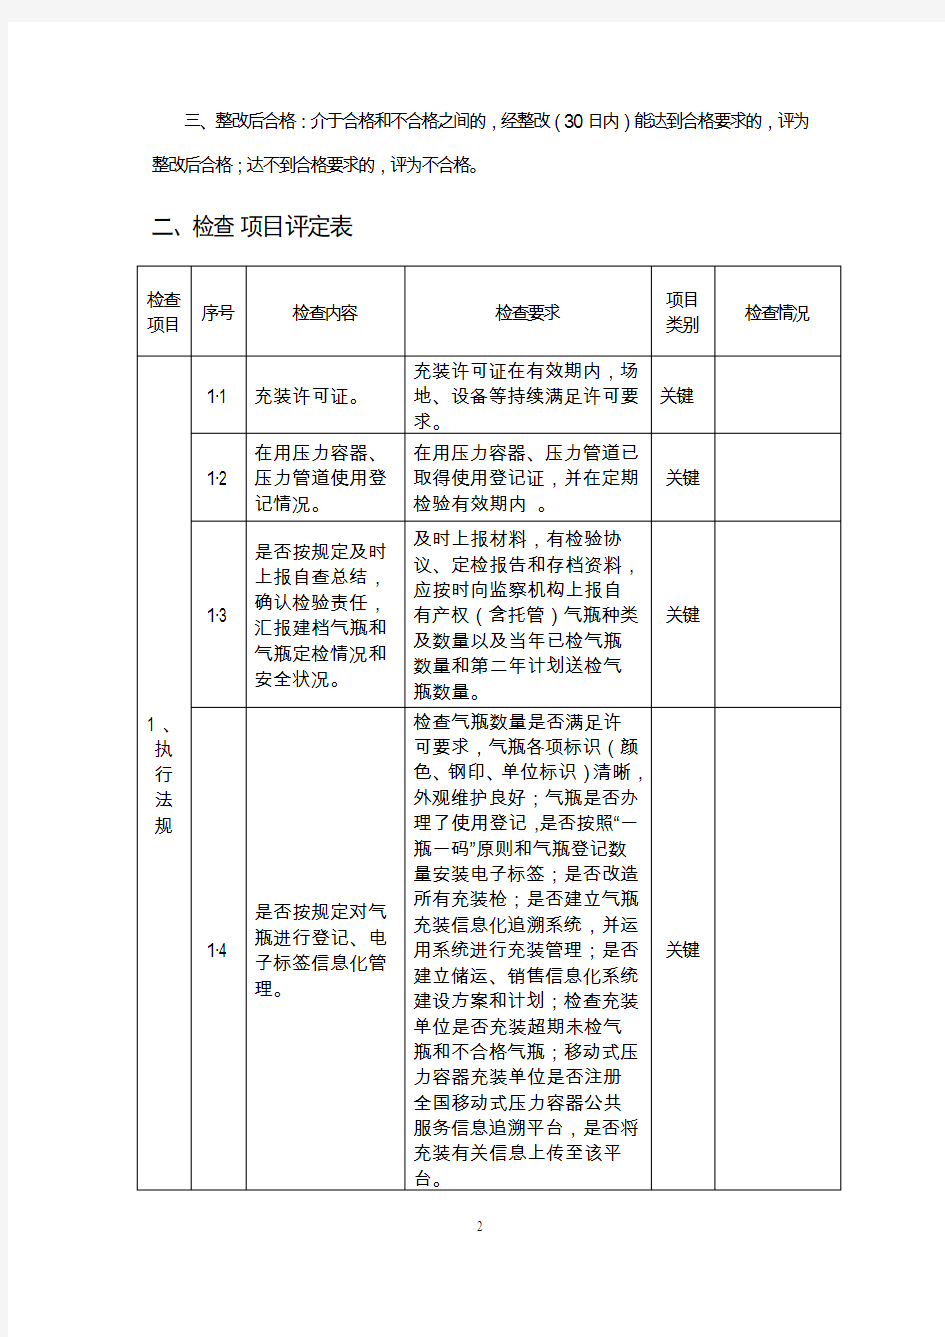 贵州省气瓶充装单位年度监督检查评定表(2019年度)